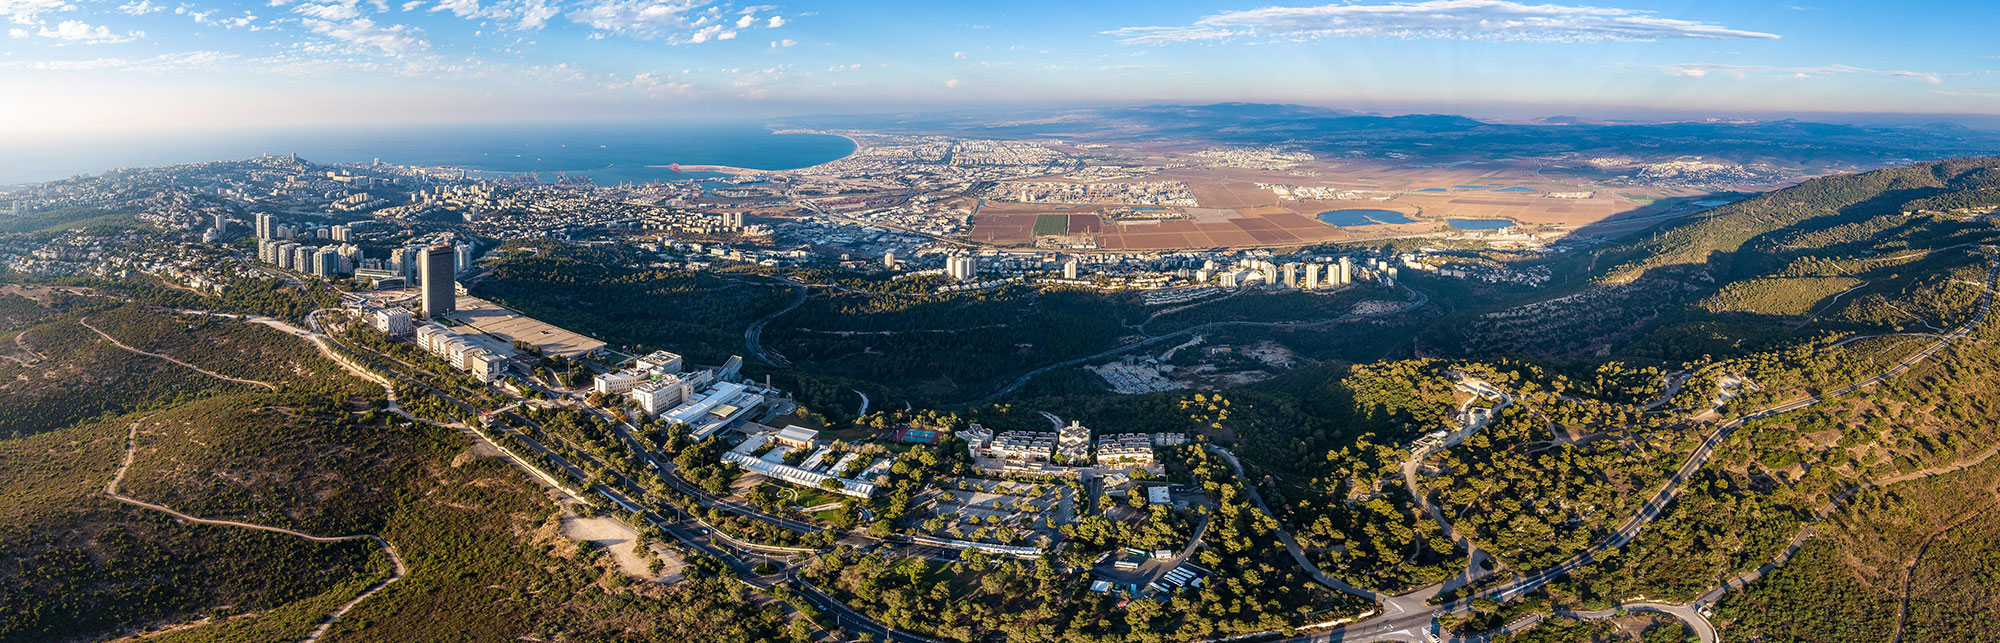 תמונת אוויר אוניברסיטת חיפה